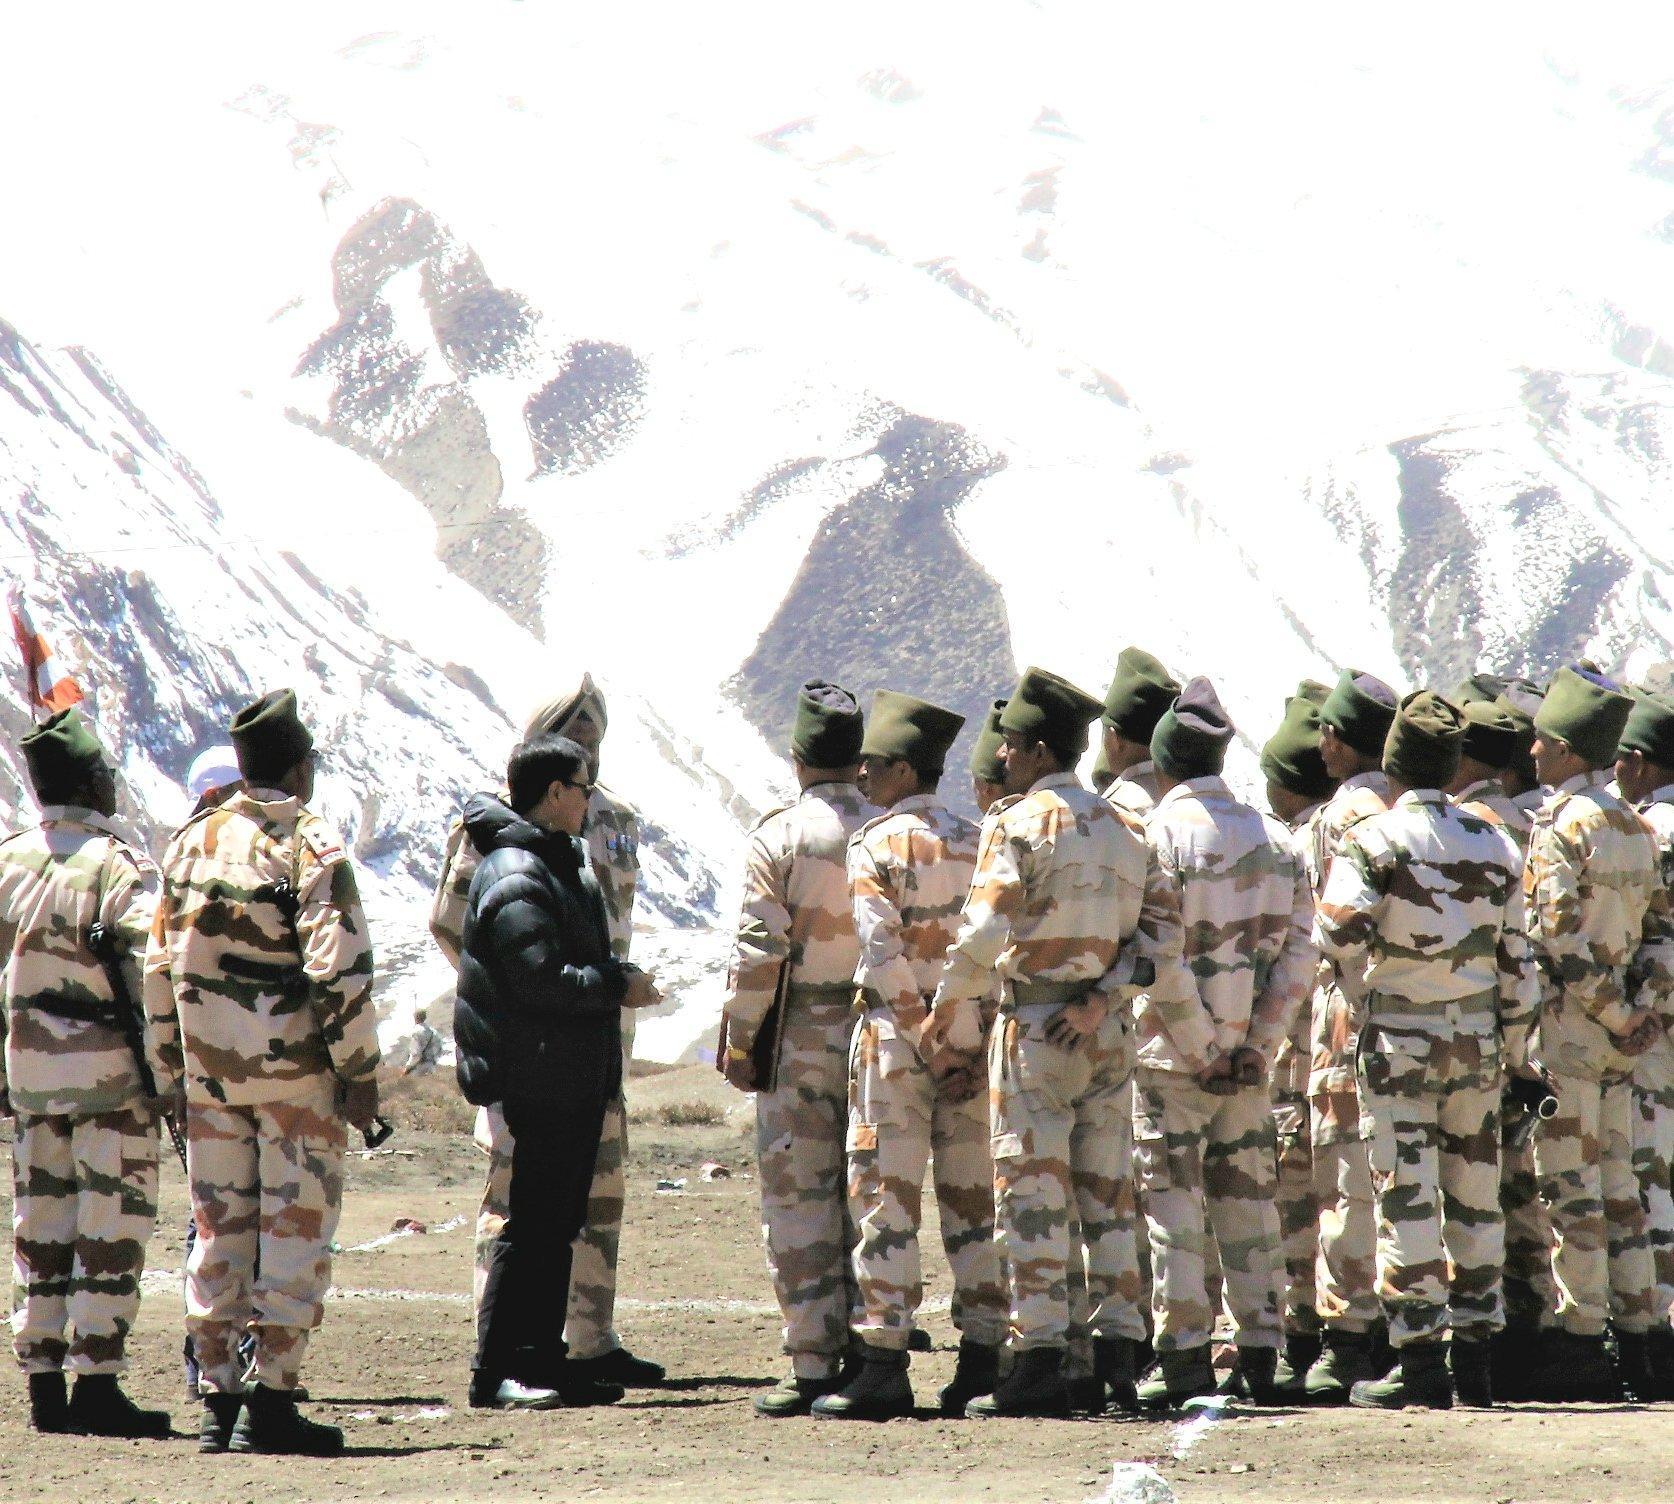 केंद्रीय मंत्री ने किया तिब्बत सीमा से लगी अग्रिम सीमा चौकियों का निरीक्षण